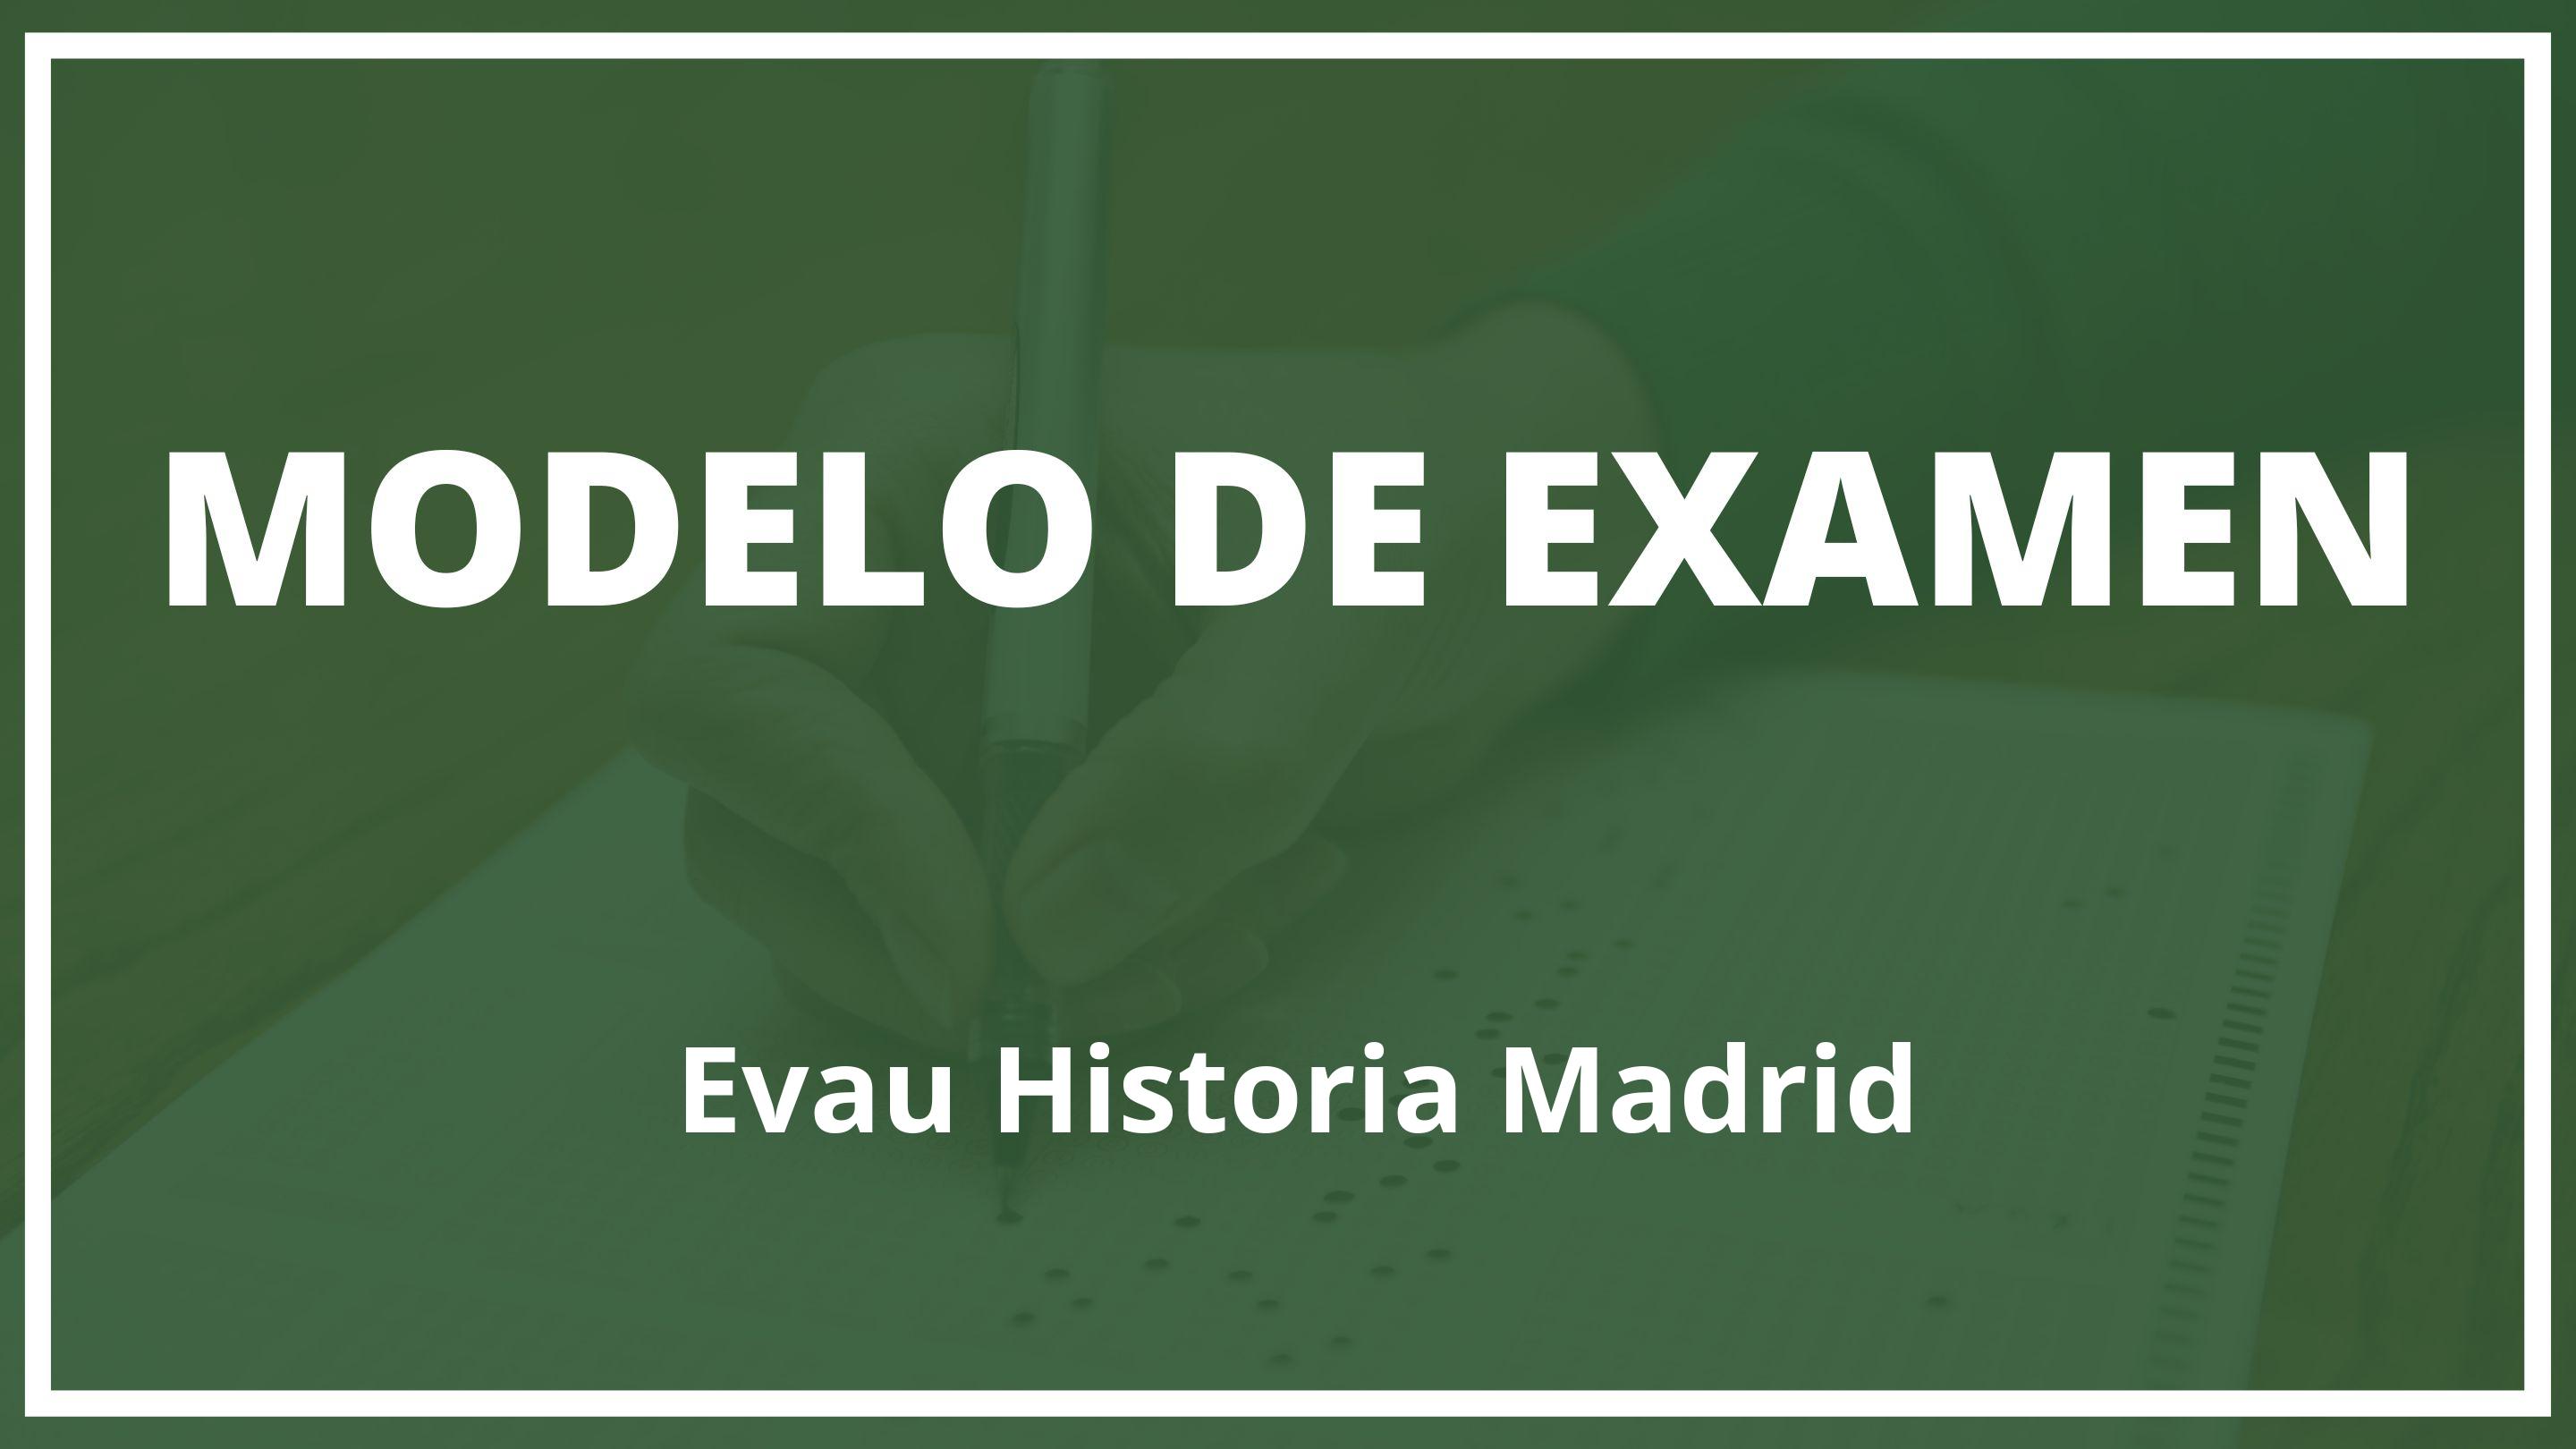 Examen Evau Historia Madrid